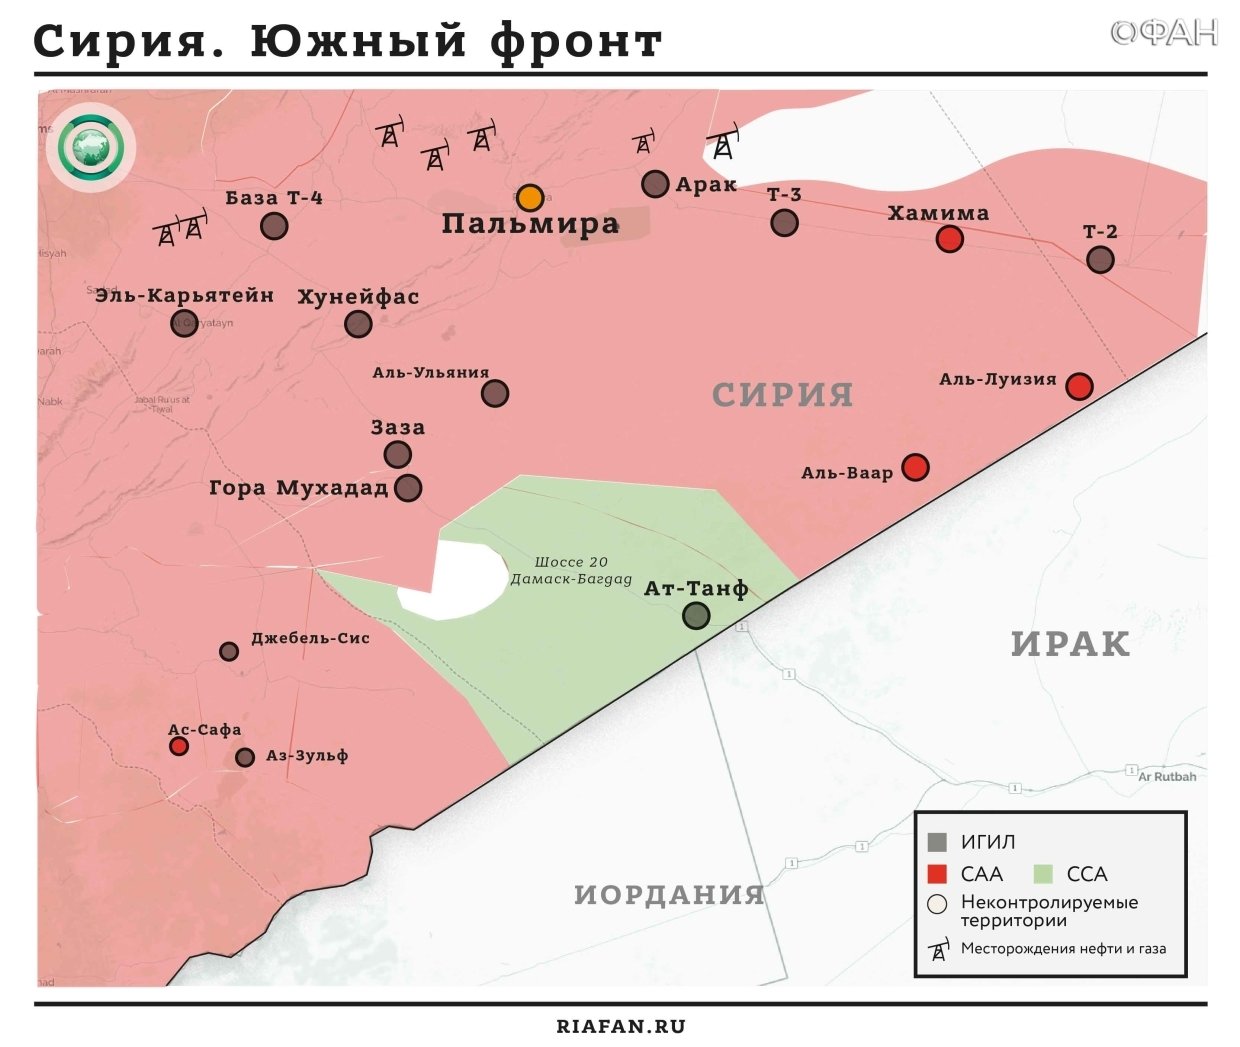 Карта военных действий в регионе